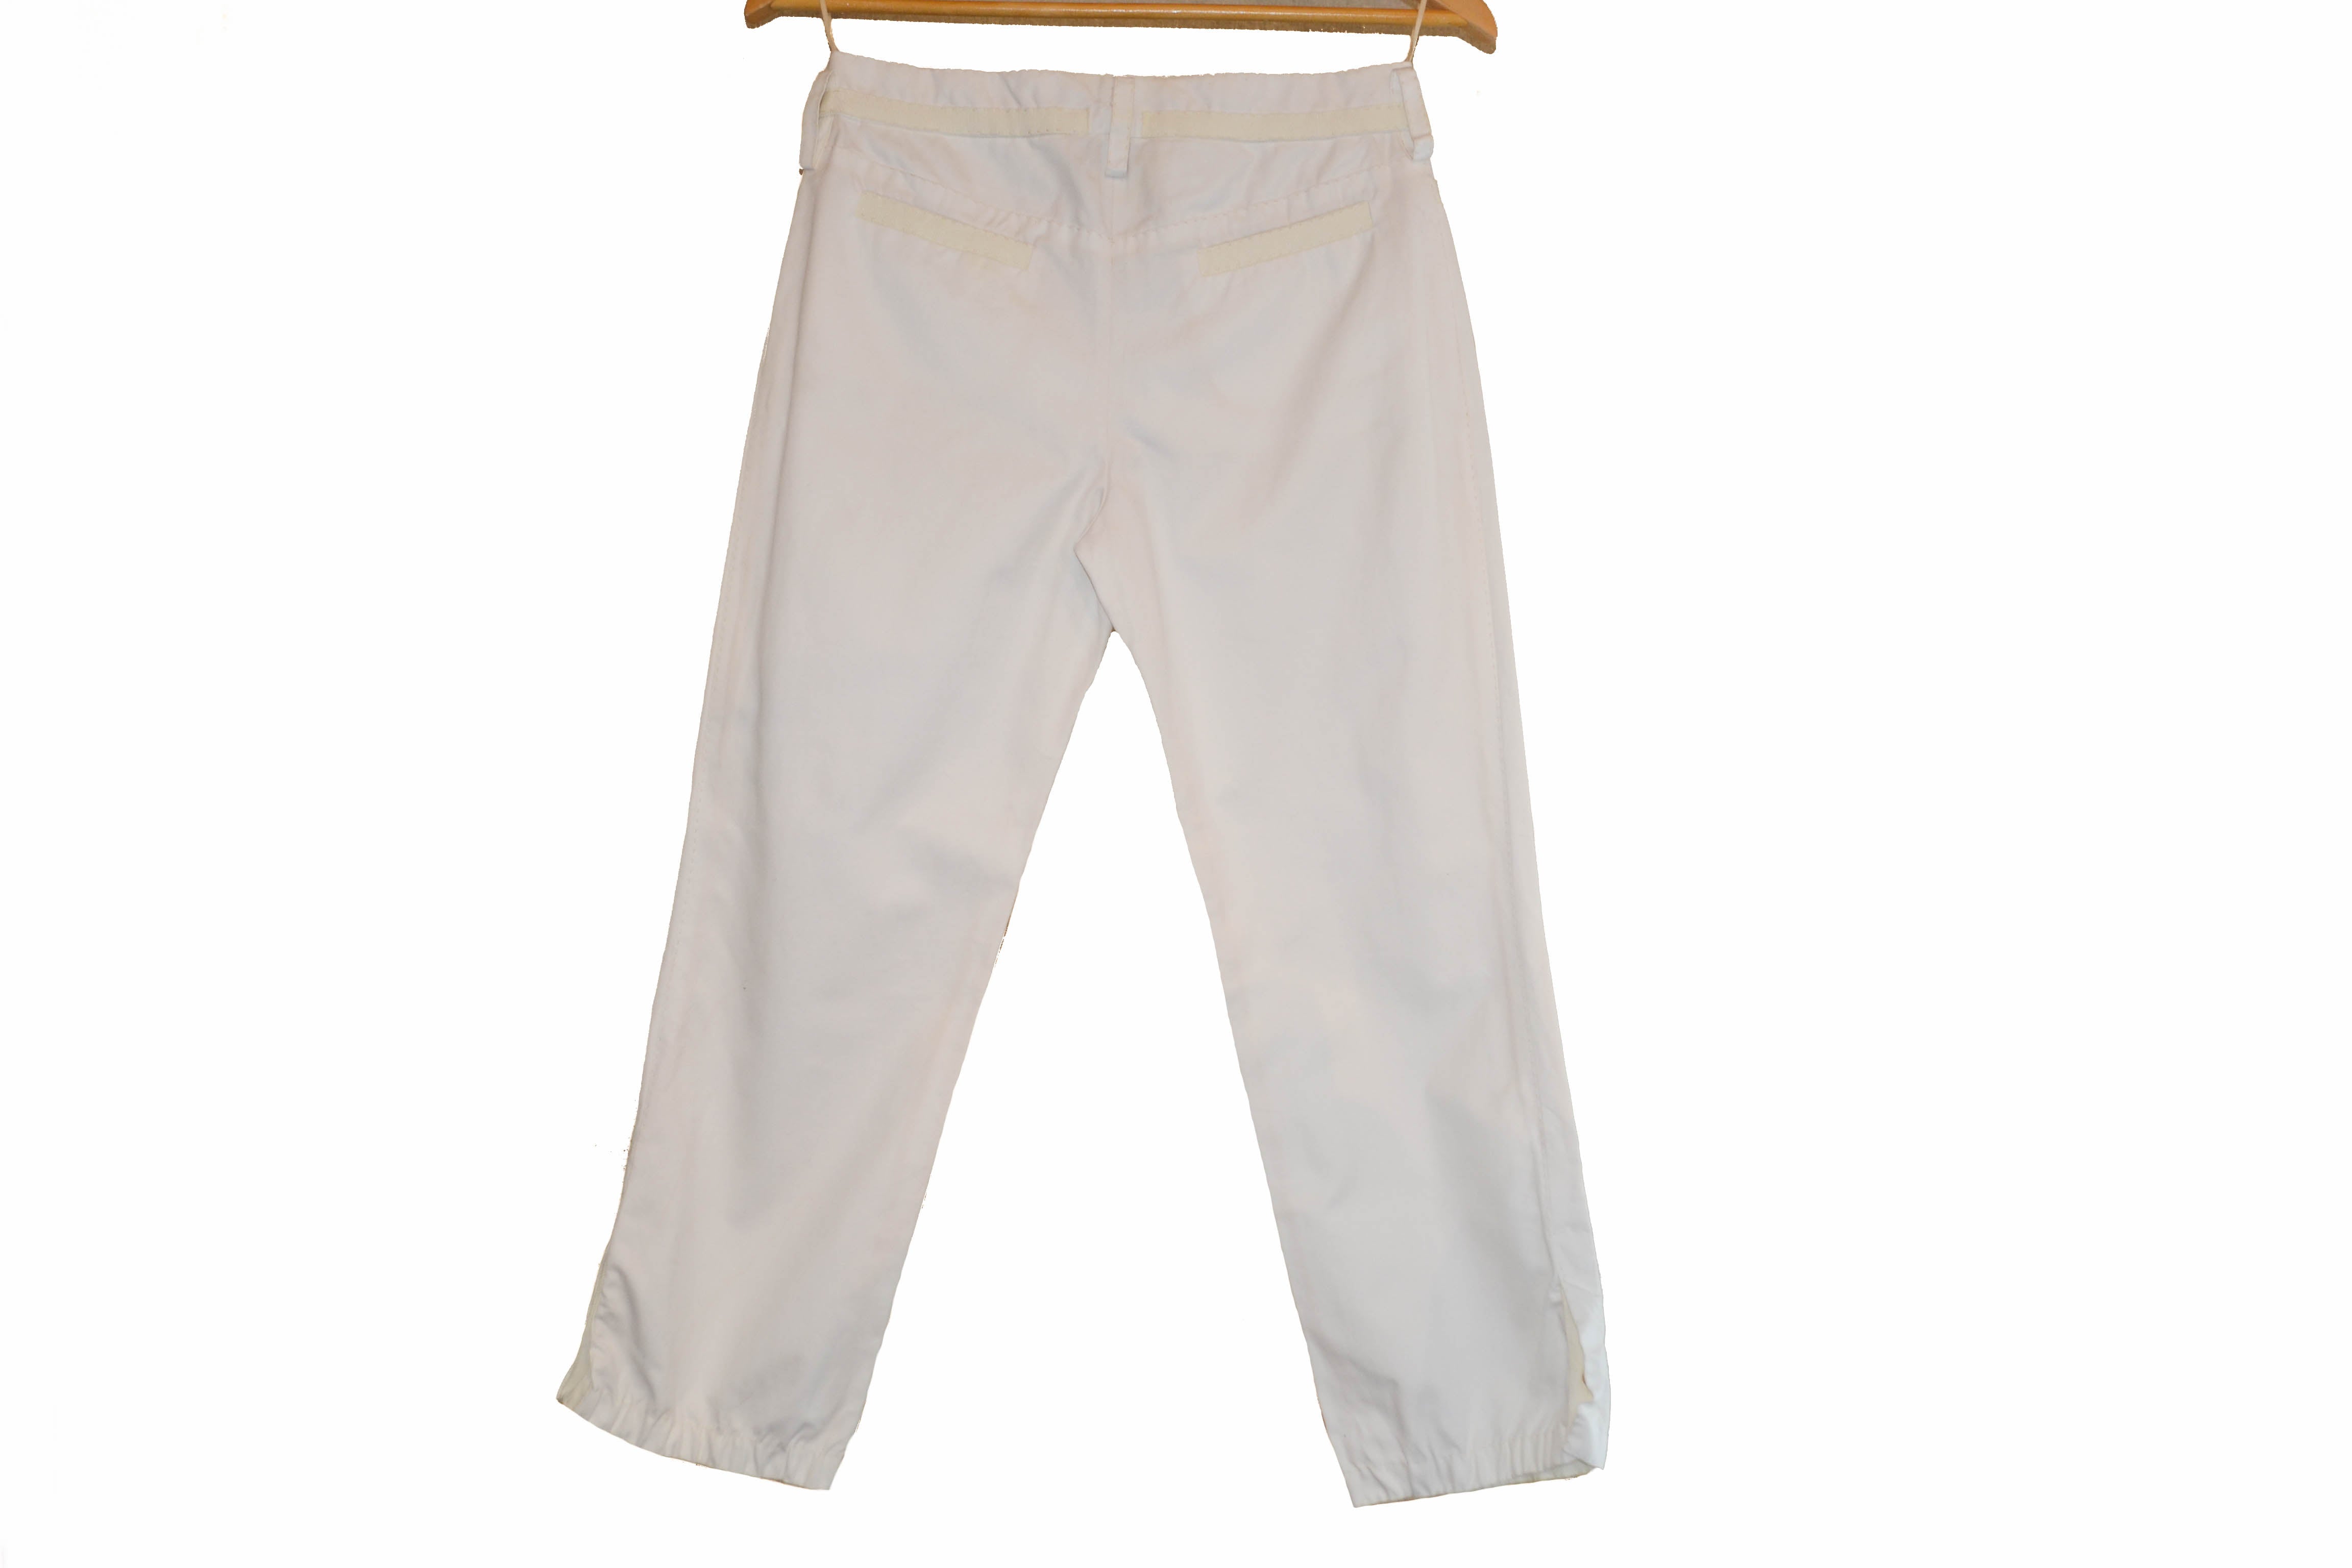 Authentic Louis Vuitton Women's White Cotton Pants Size 36 – Paris ...